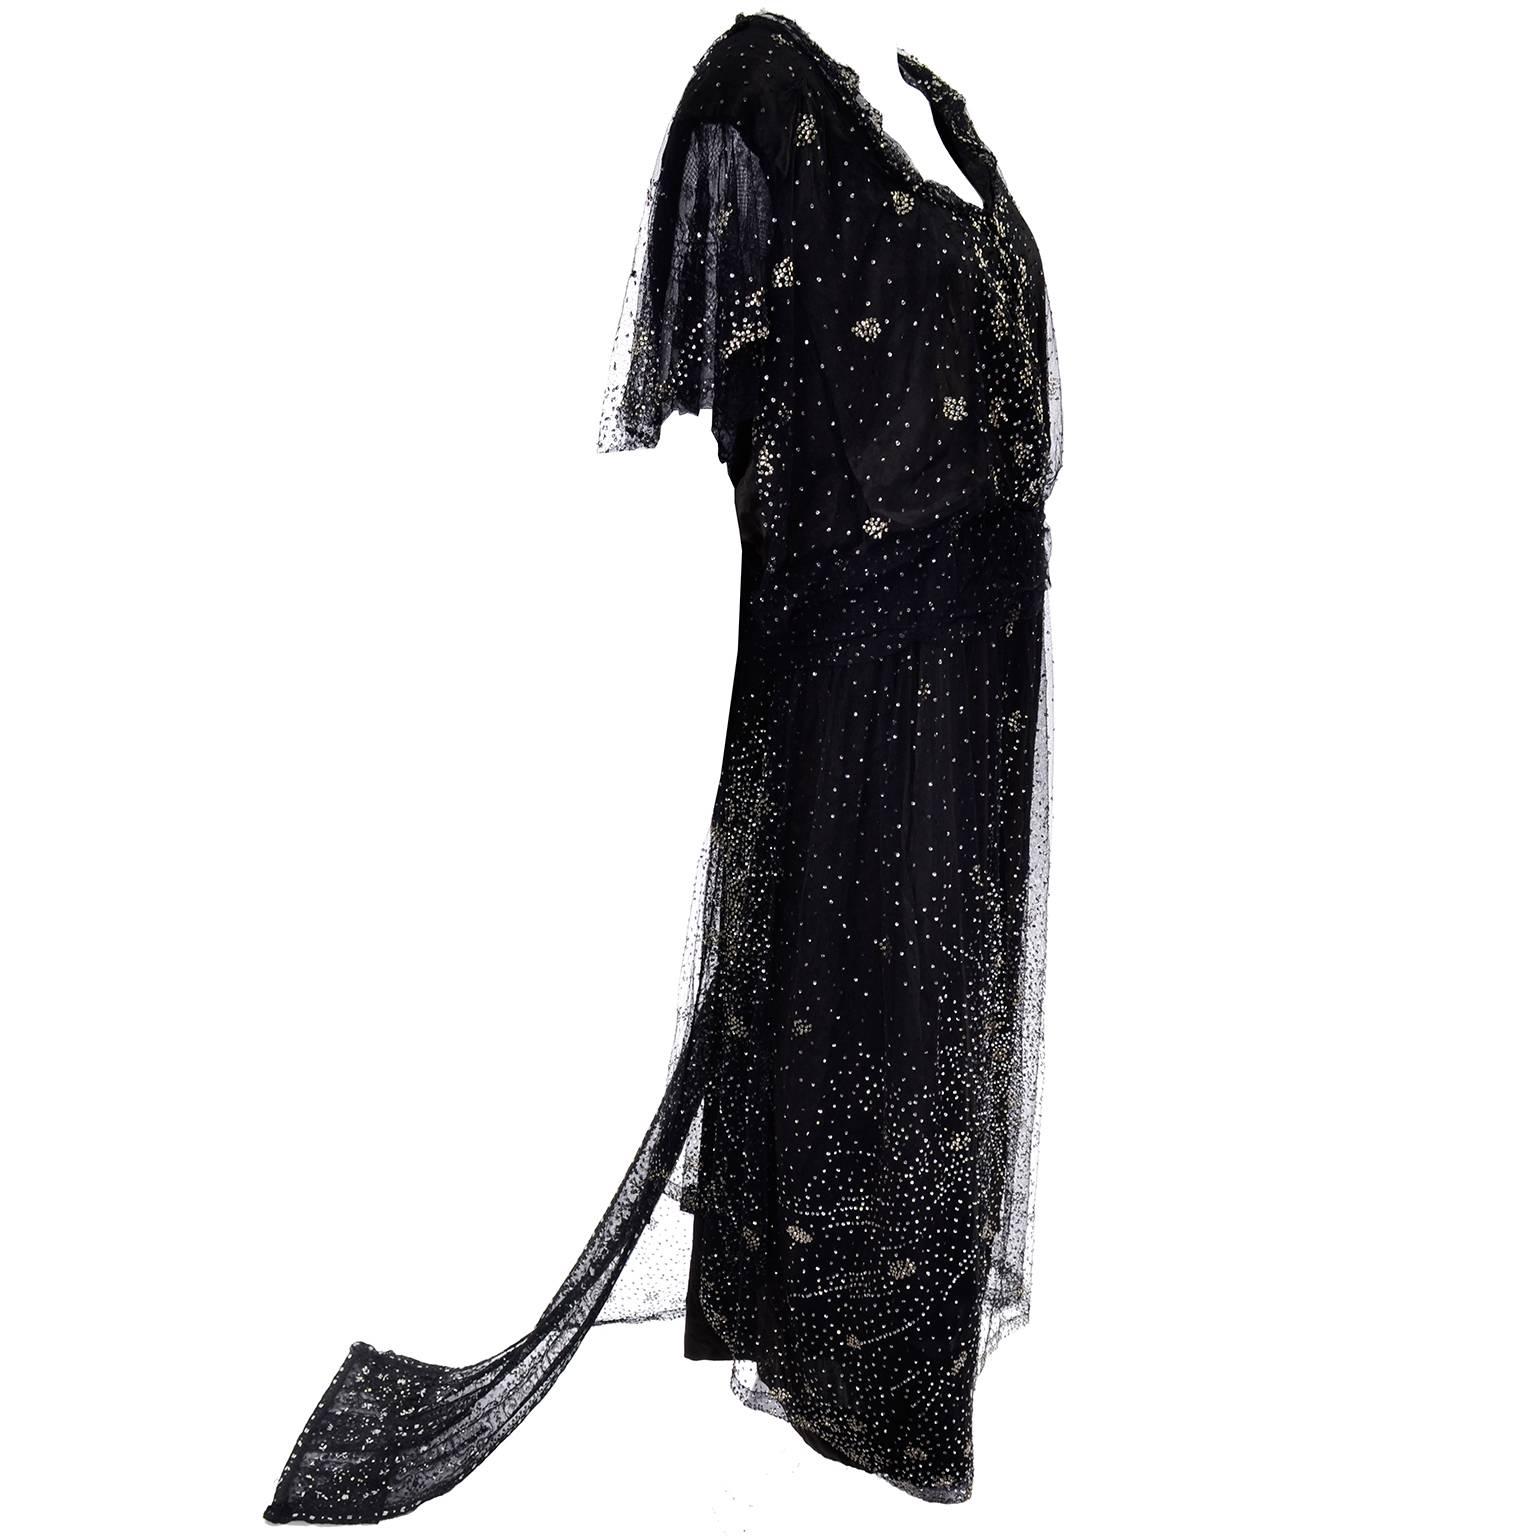 Il s'agit d'une robe édouardienne absolument incroyable avec des paillettes et des perles argentées recouvrant la couche extérieure en dentelle noire et créant un motif d'étoile en feu d'artifice sur le devant. La taille est ajustée par une sangle